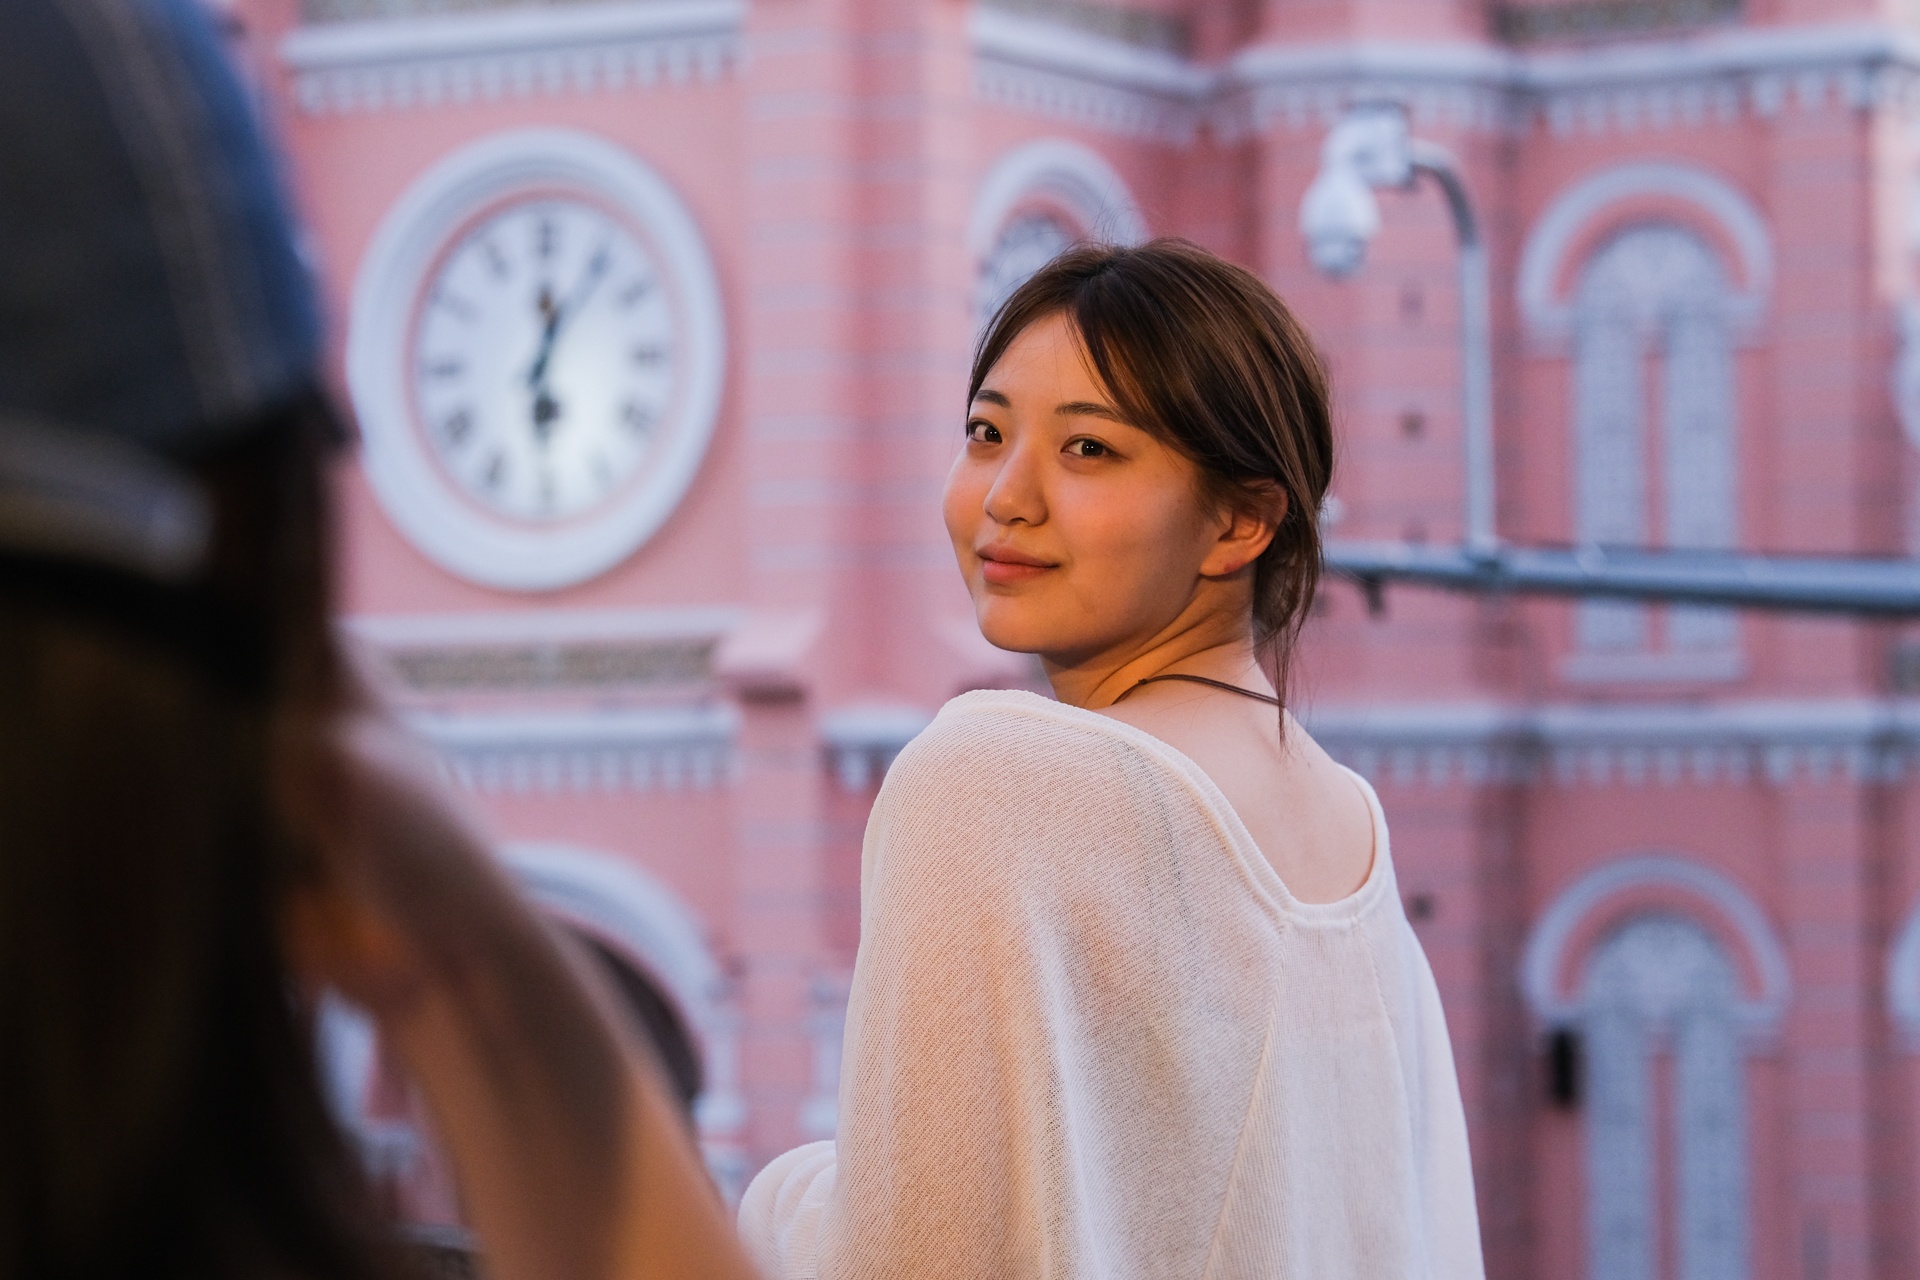 Hàng trăm khách châu Á đến nhà thờ Tân Định chụp ảnh mỗi ngày - ảnh 8